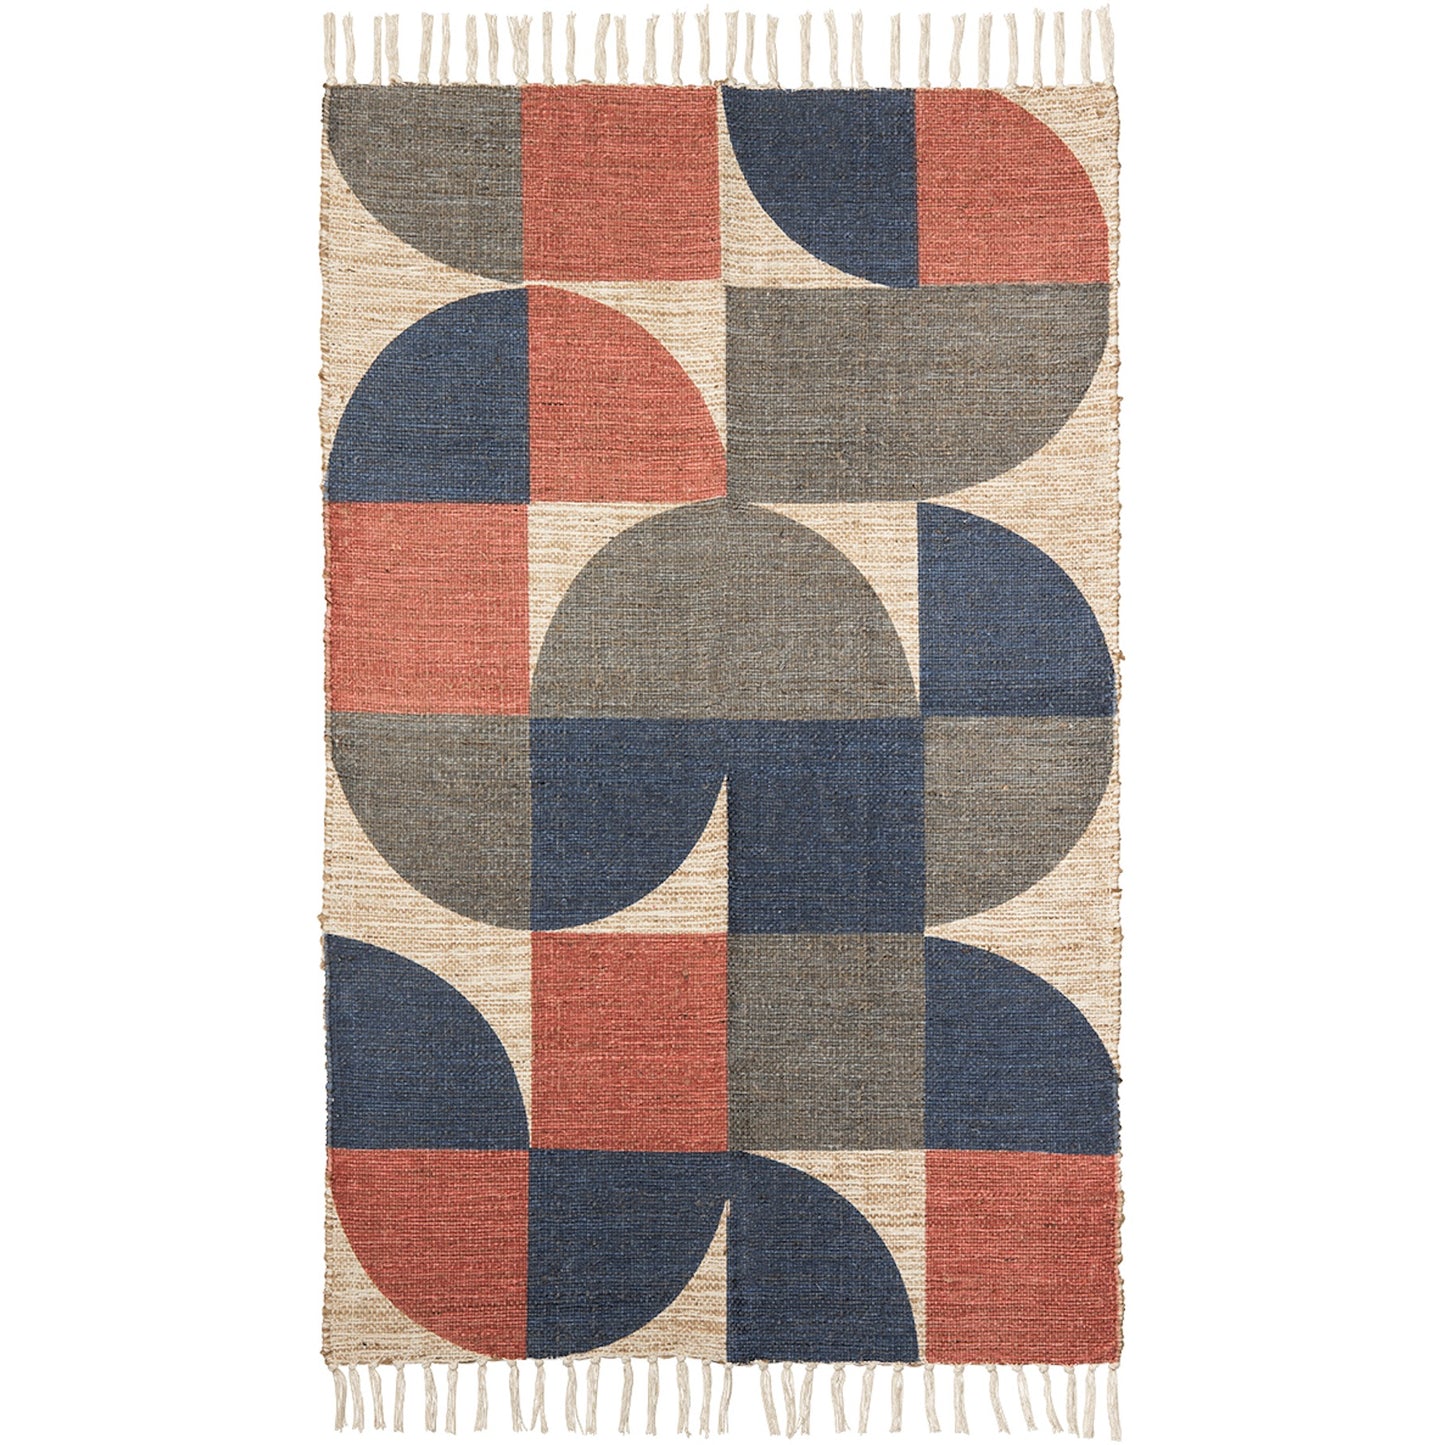 'Retro' rug 150cm x 90cm (blue, grey, red)